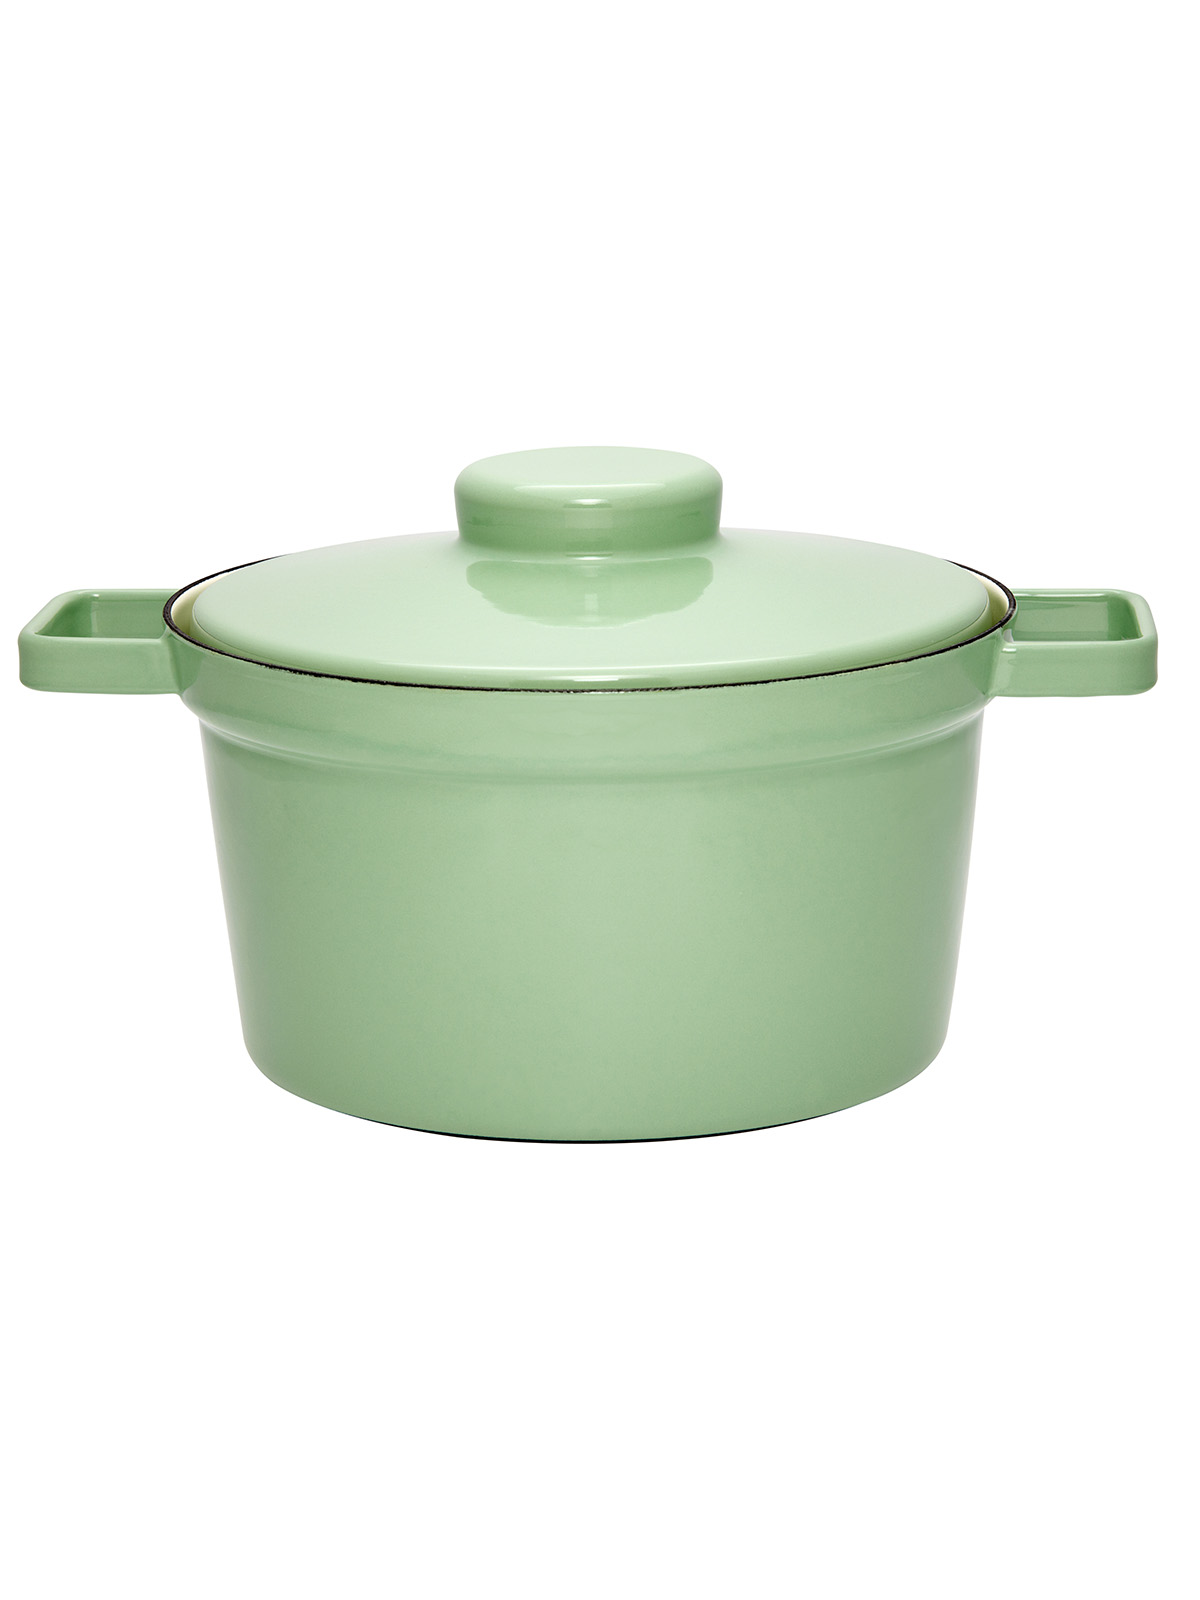 pan met deksel 24cm, slow green 3.5 liter